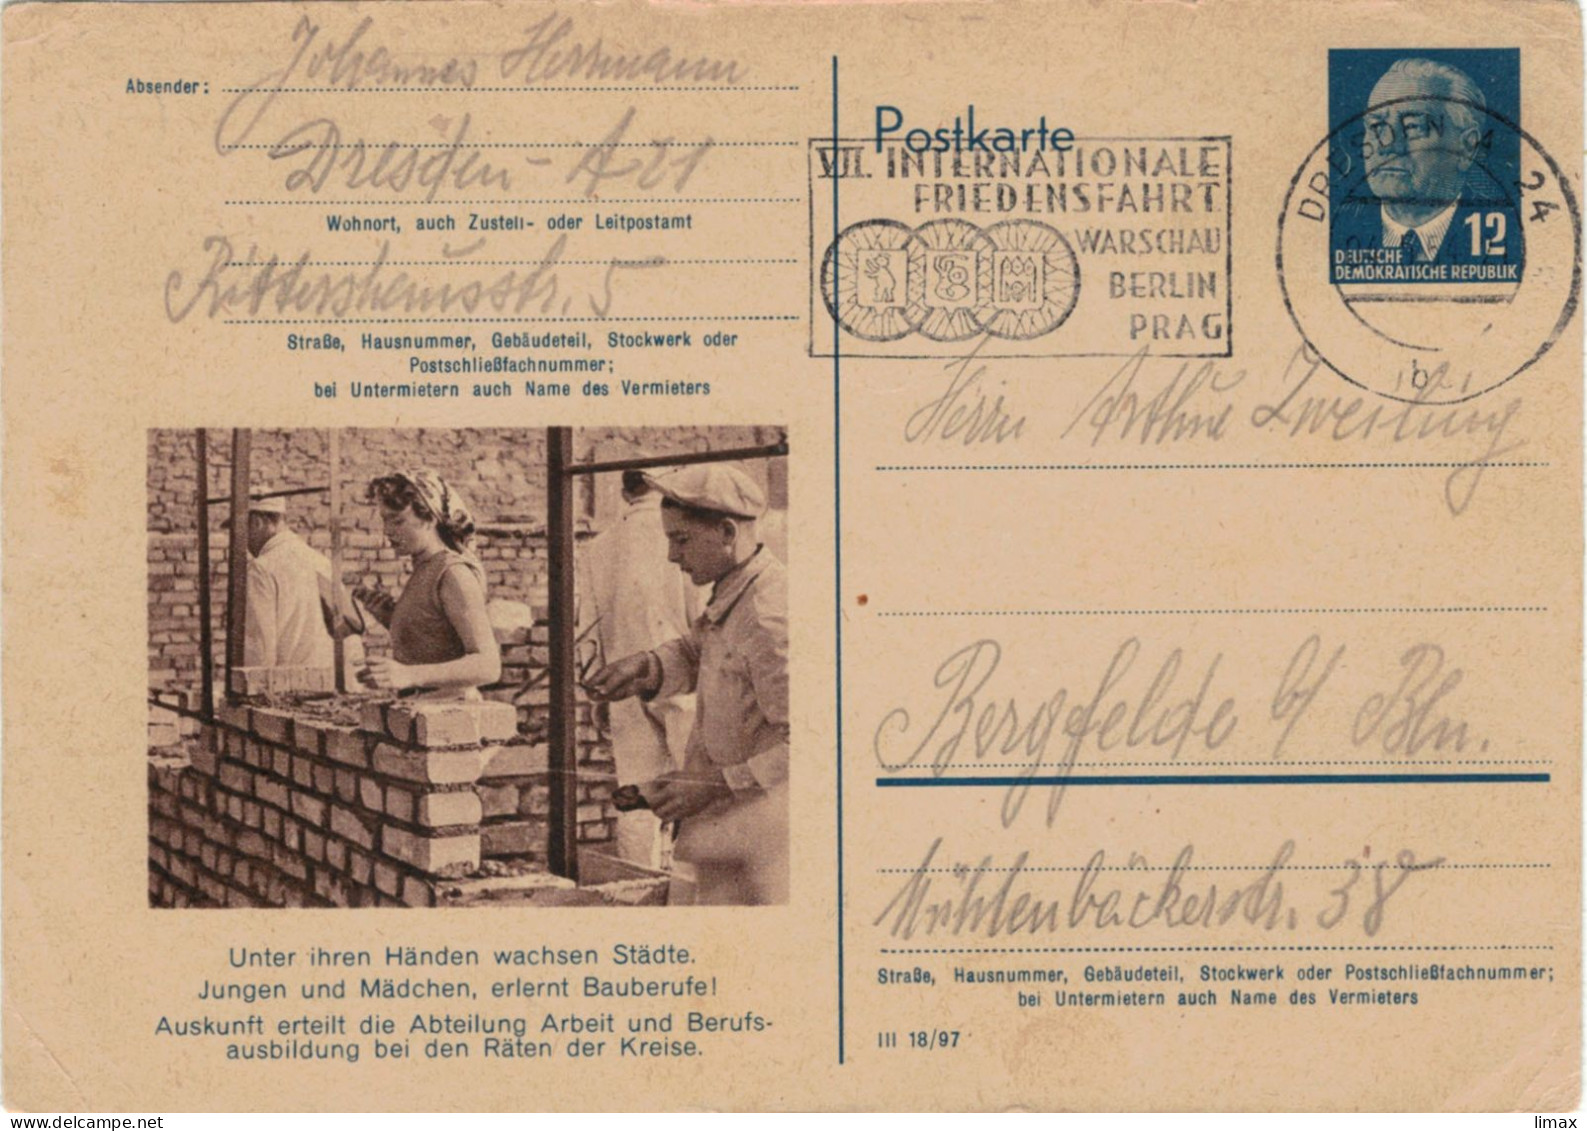 Niemand Hat Die Absicht, Eine Mauer Zu Errichten! - Berlin 1954 - Ganzsache Ziegel Maurer Mörtel DDR Pieck Friedensfahrt - Postales - Usados